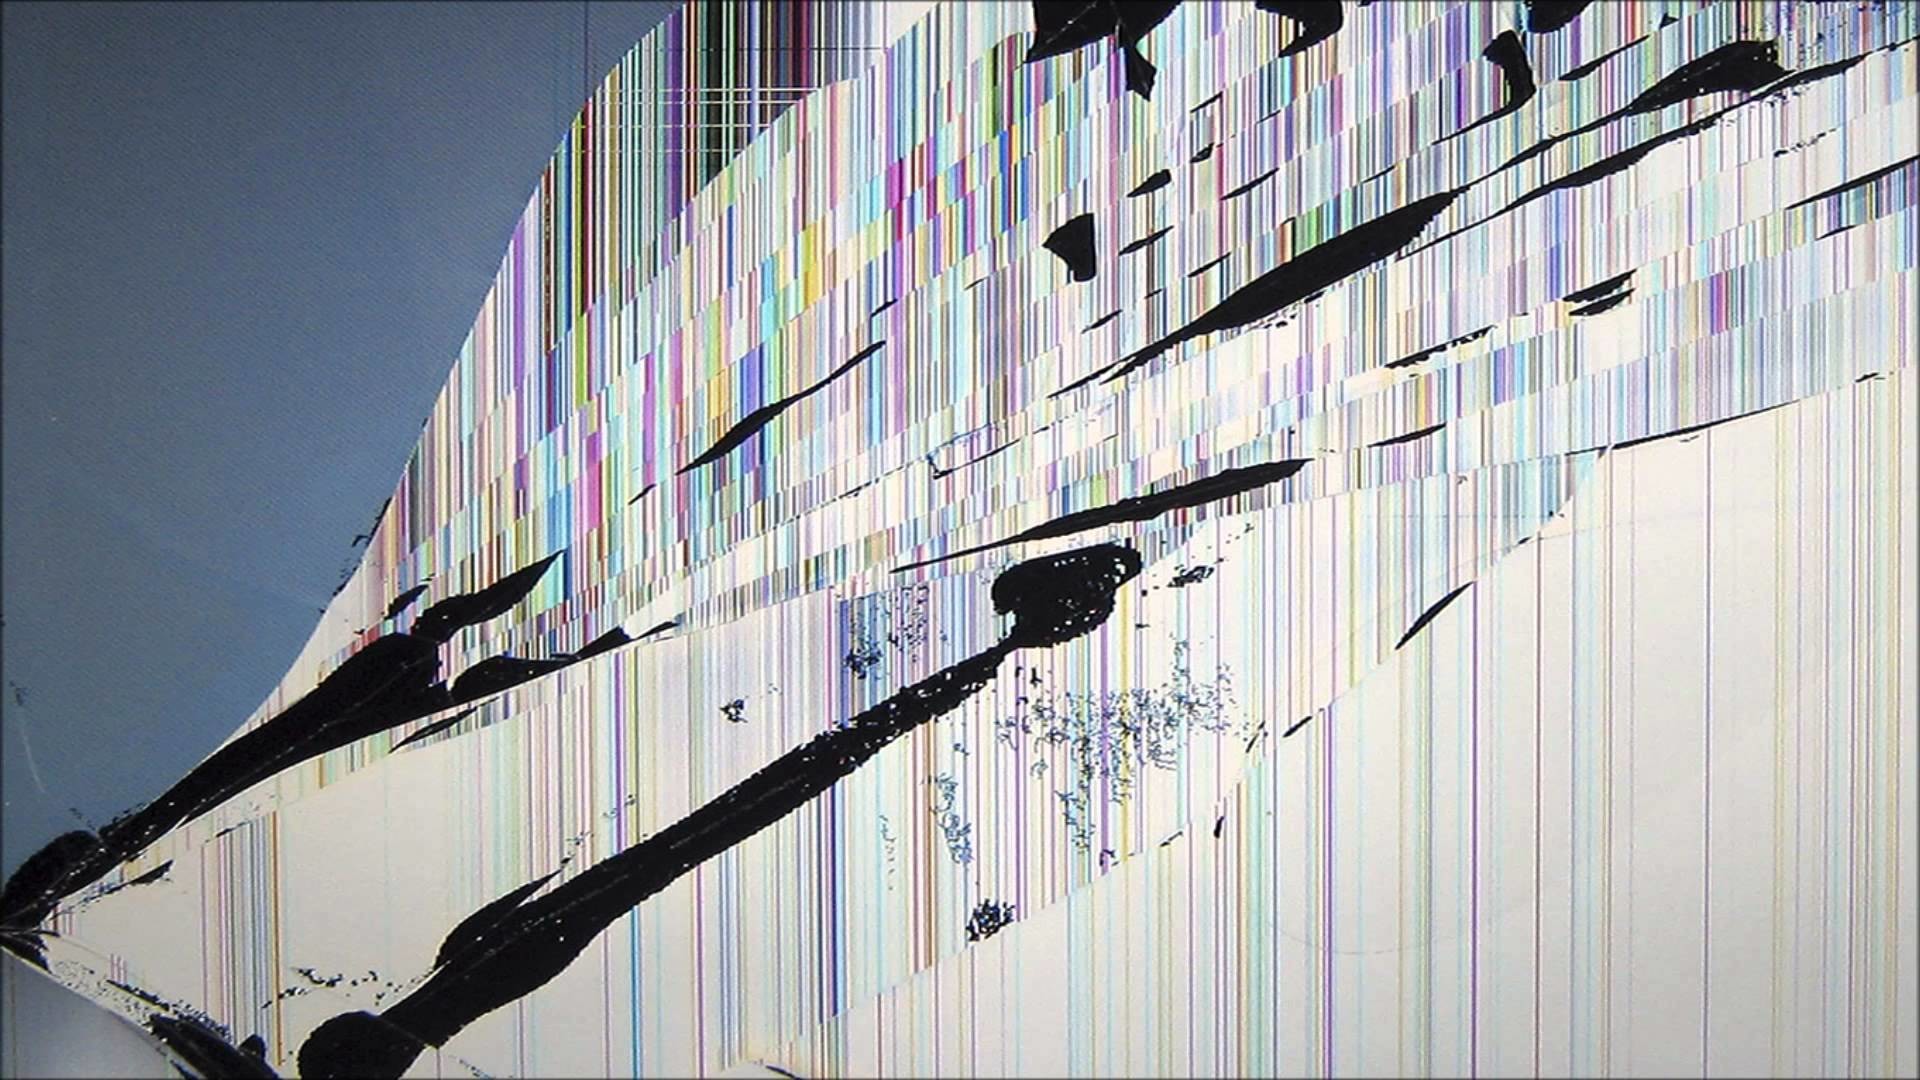 Broken Tv Screen Image Wallpapers